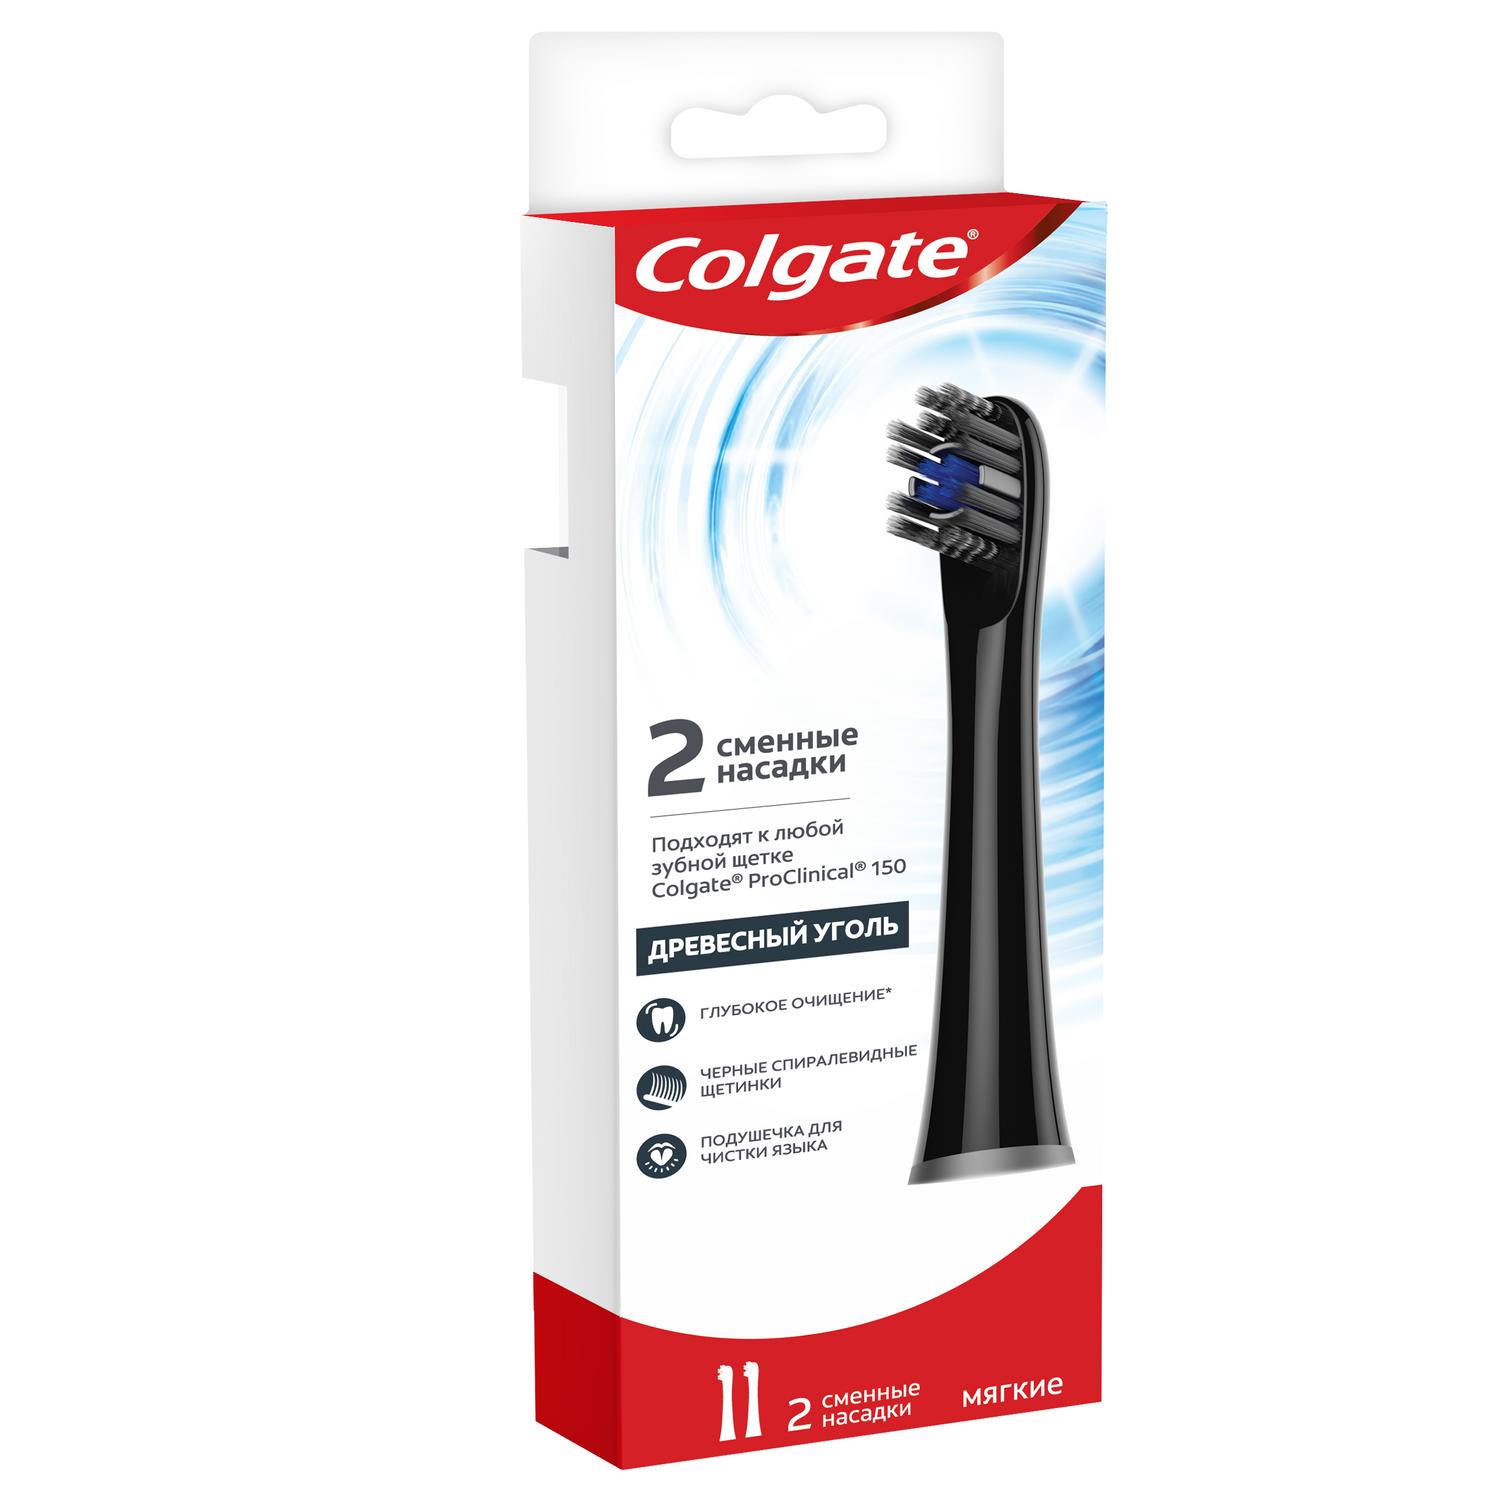 Сменные насадки для электрической зубной щетки Colgate Proclinical 150 Древесный Уголь мягкие 2 шт, цвет черный - фото 7